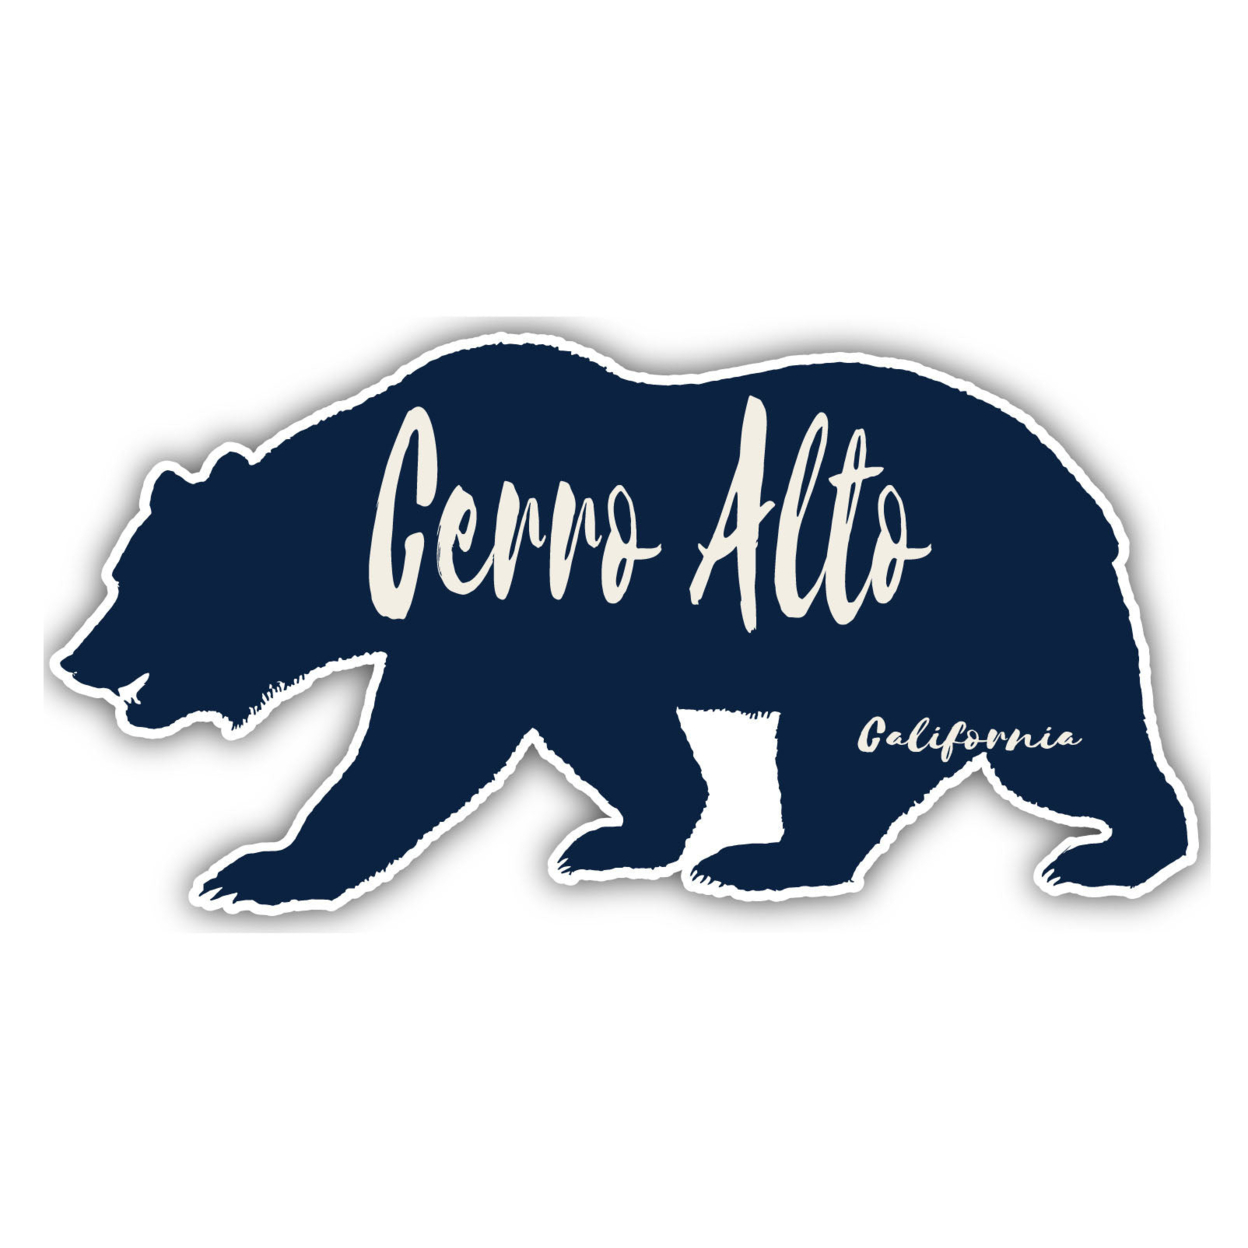 Cerro Alto California Souvenir Decorative Stickers (Choose Theme And Size) - Single Unit, 8-Inch, Bear